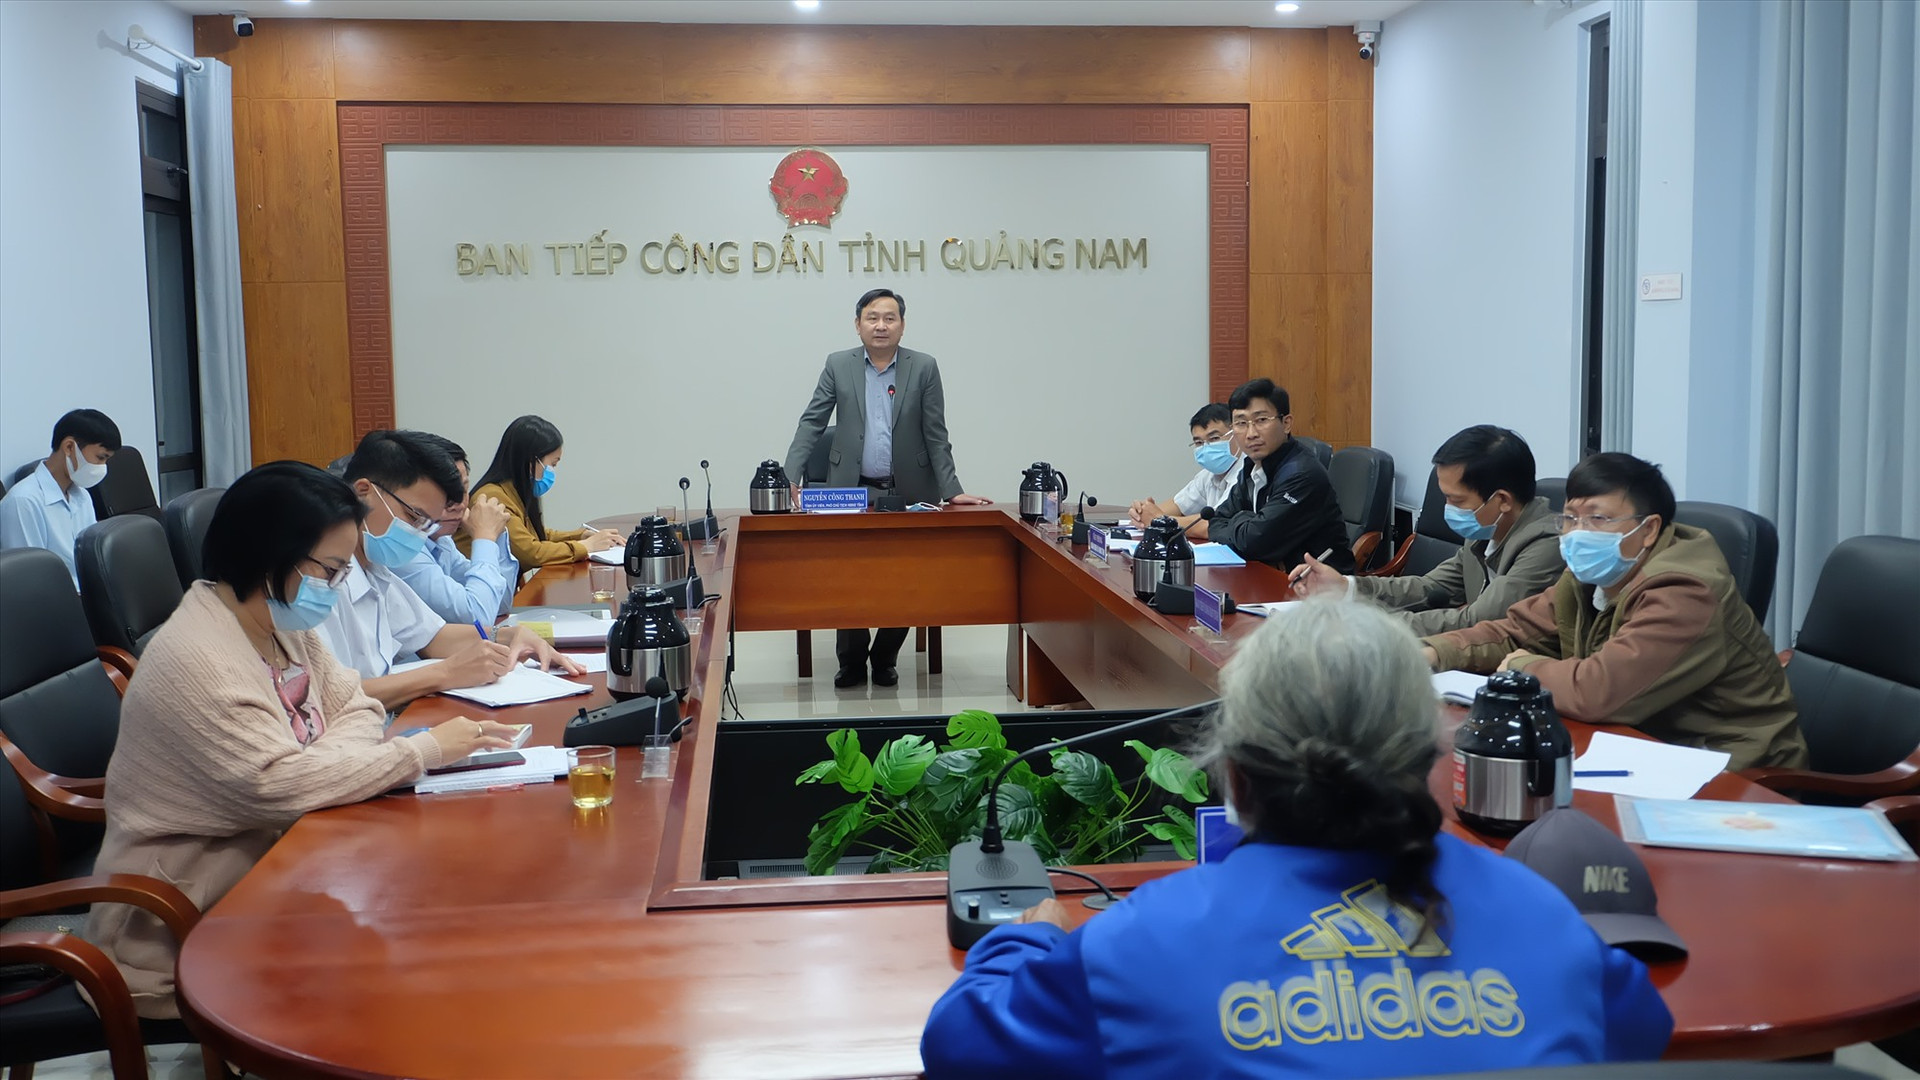 Phó Chủ tịch HĐND tỉnh Nguyễn Công Thanh kết luận buổi tiếp công dân. Ảnh: M.L